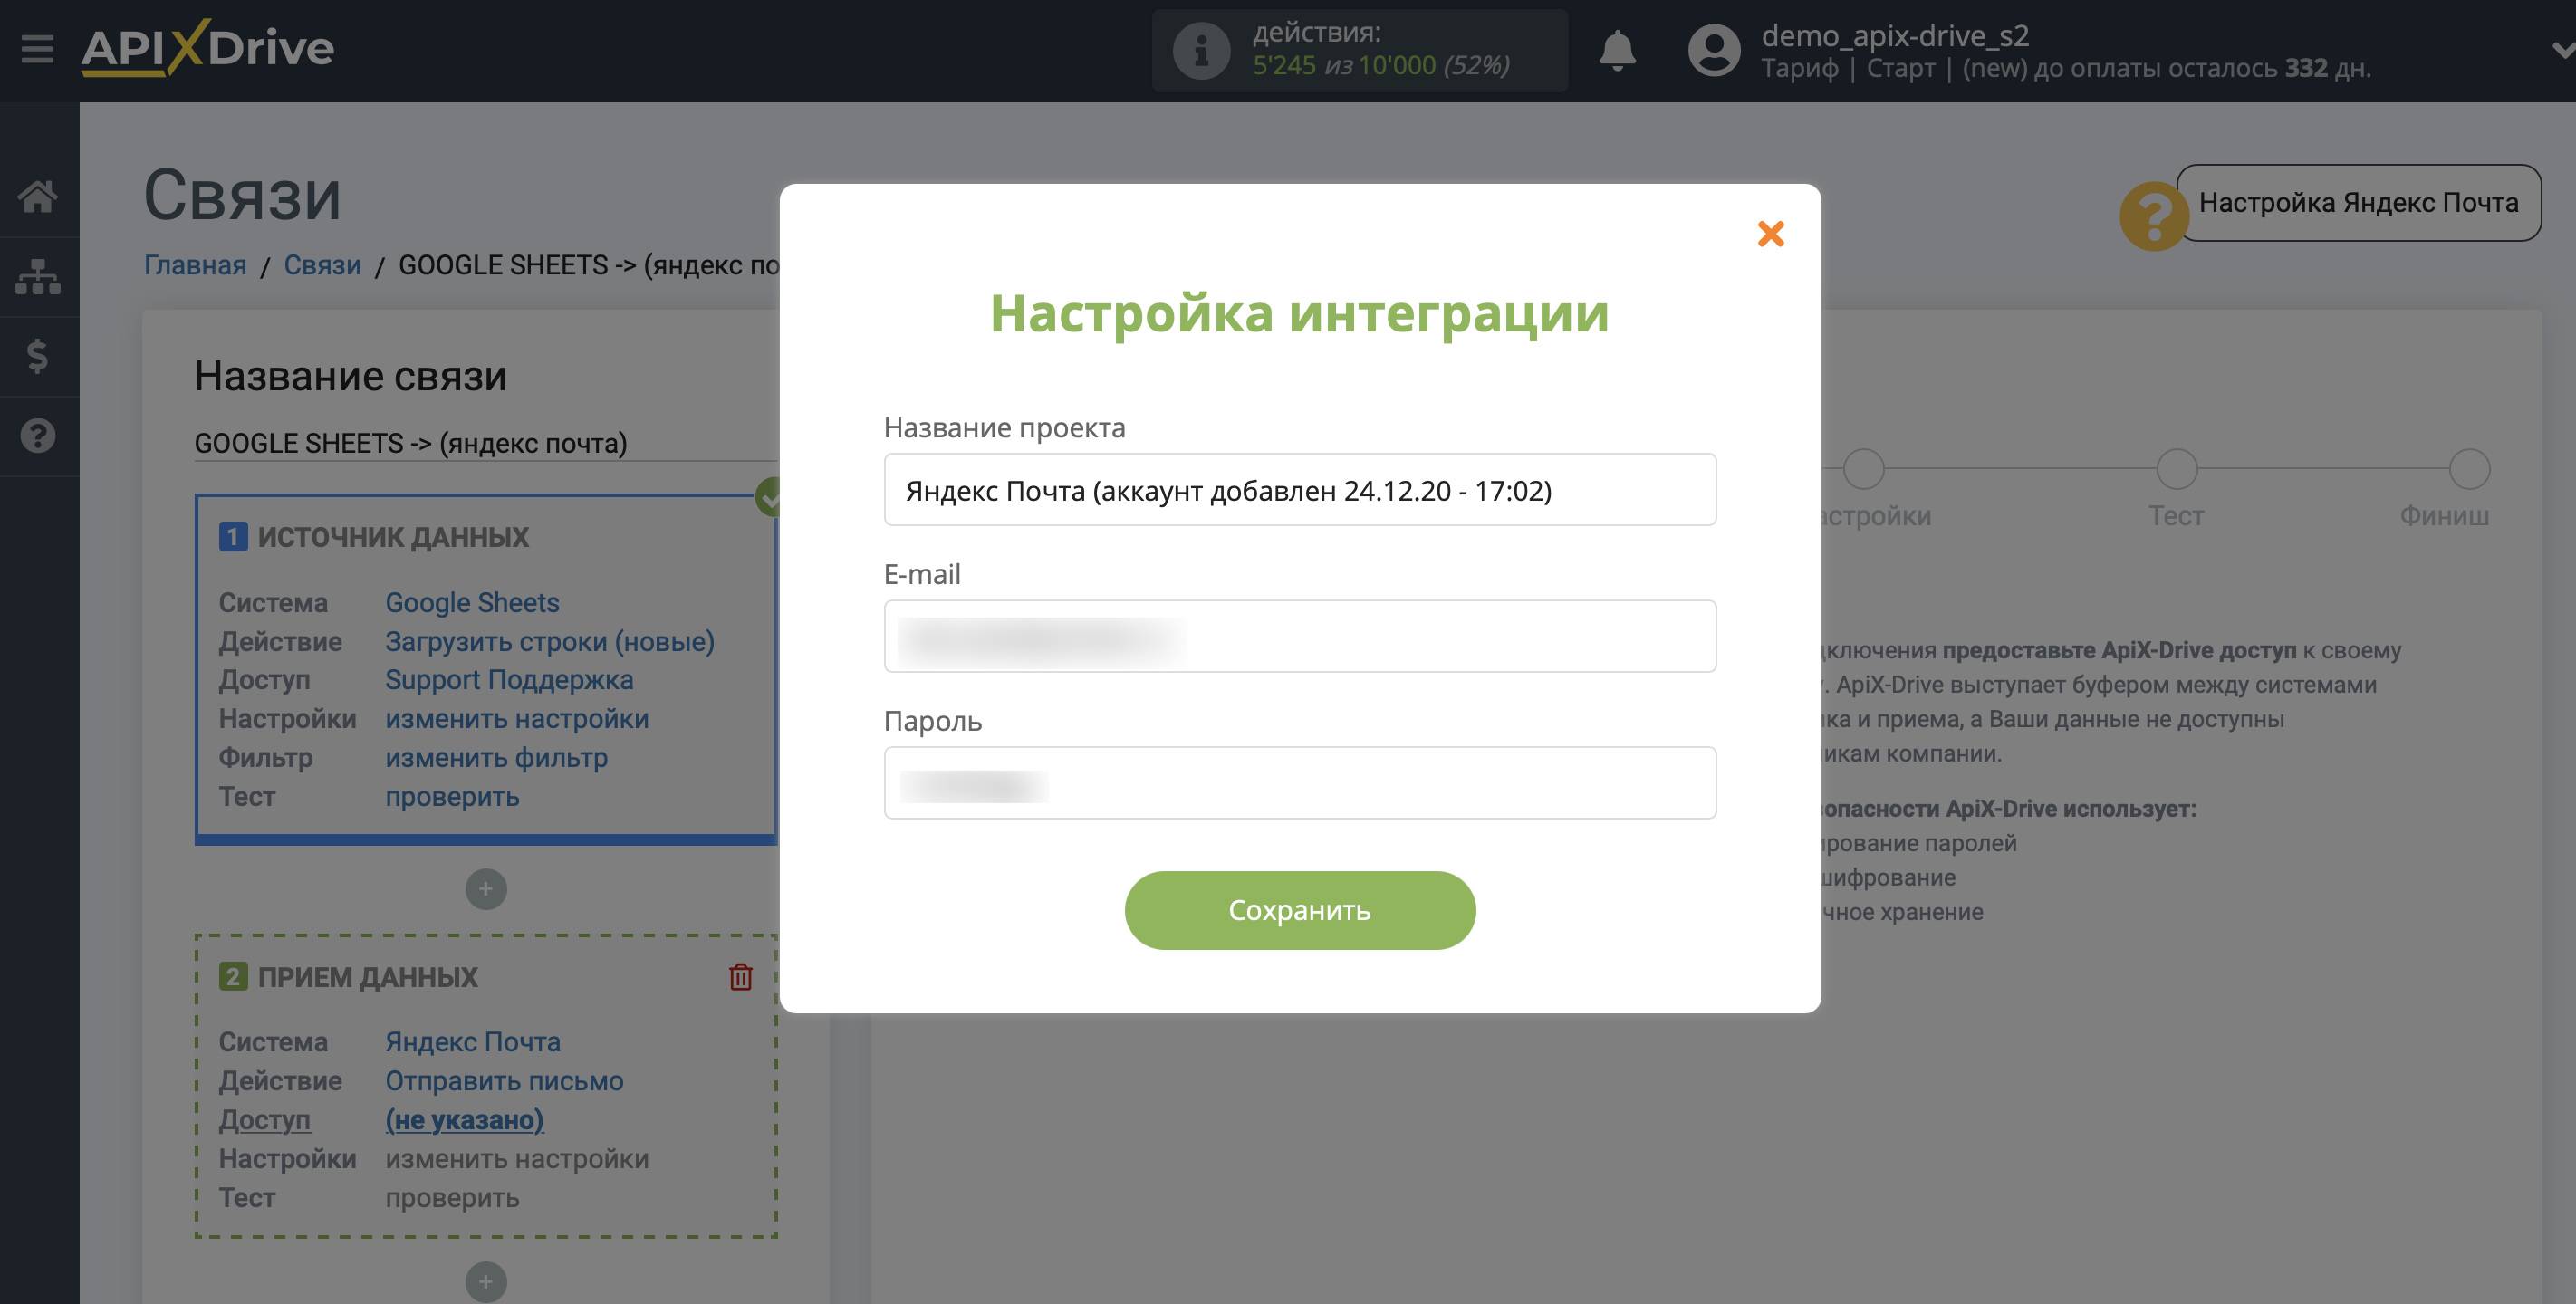 Настройка Яндекс Почта в качестве Приема данных | Внесение данных